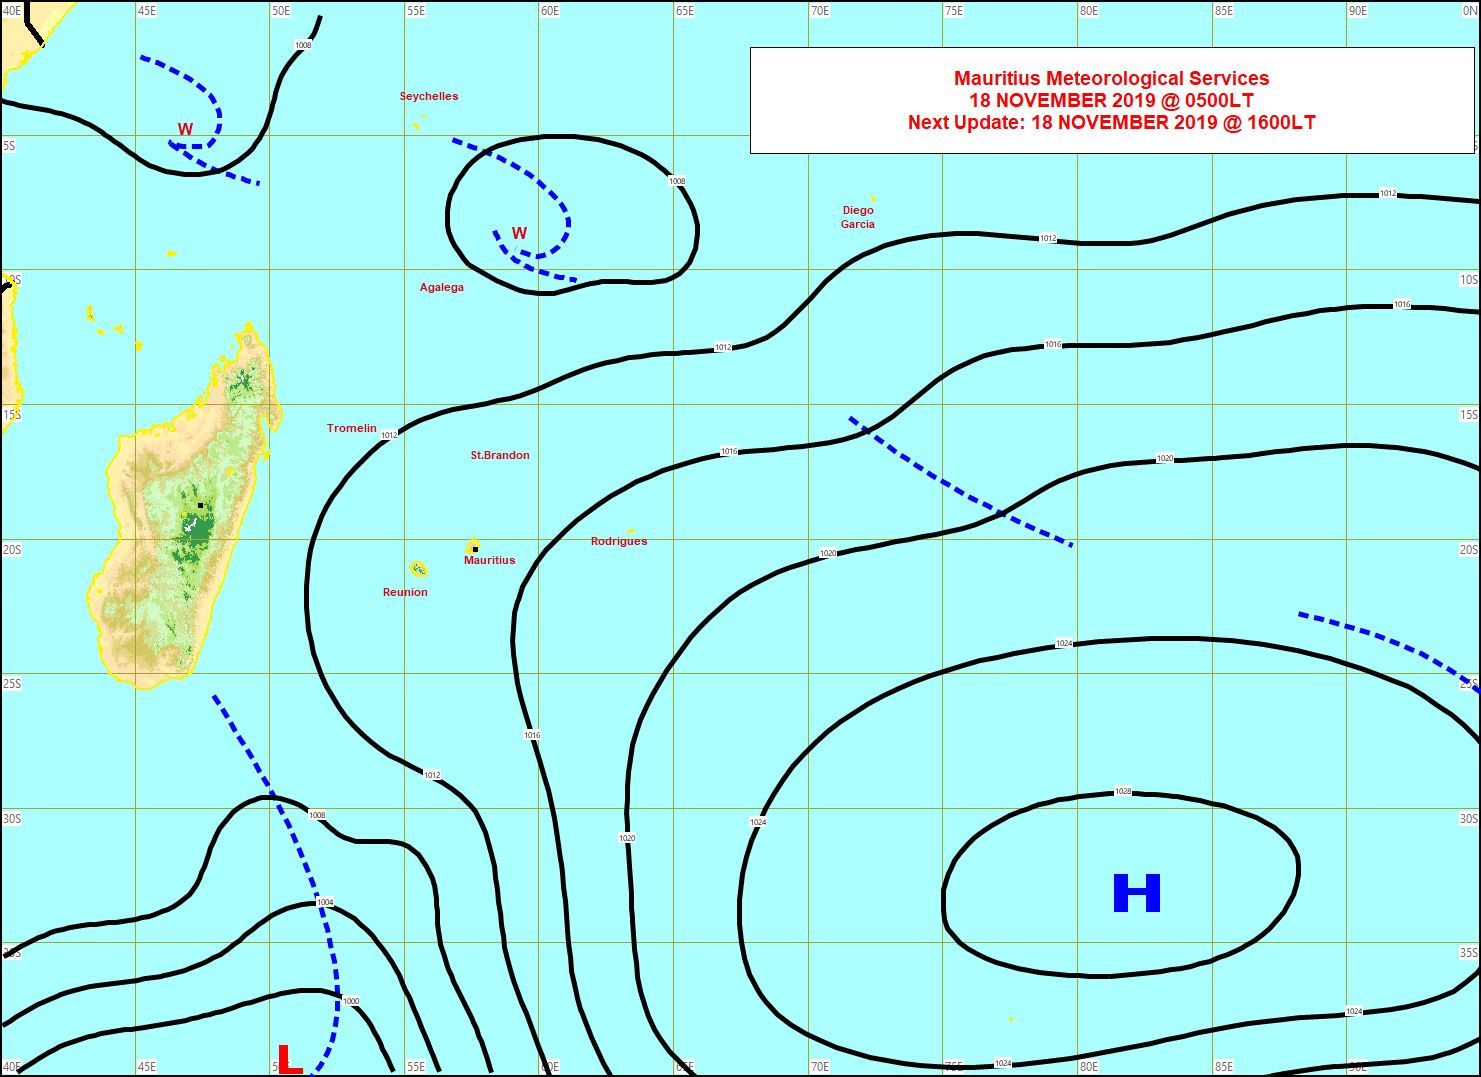 Un système frontal passe au large au Sud-Ouest de la Réunion. Instabilité vers Agaléga. MMS